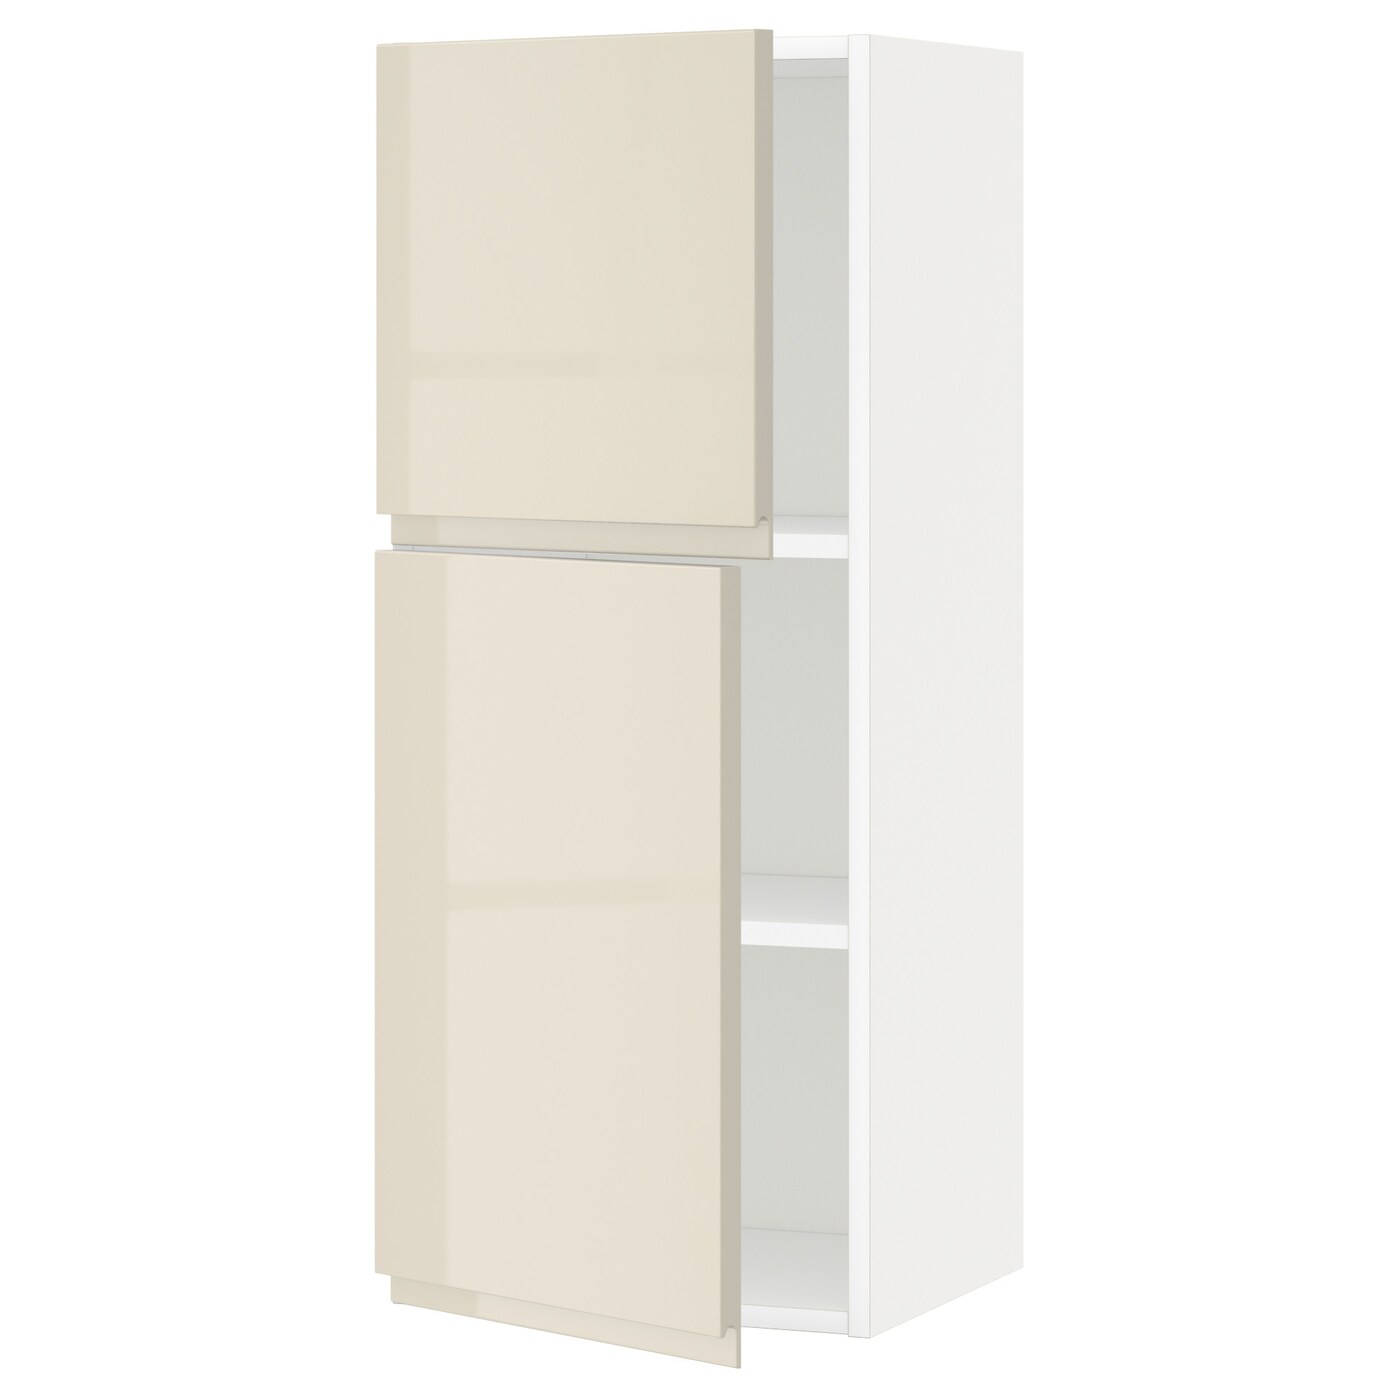 Навесной шкаф с полкой - METOD IKEA/ МЕТОД ИКЕА, 100х40 см, белый/светло-бежевый